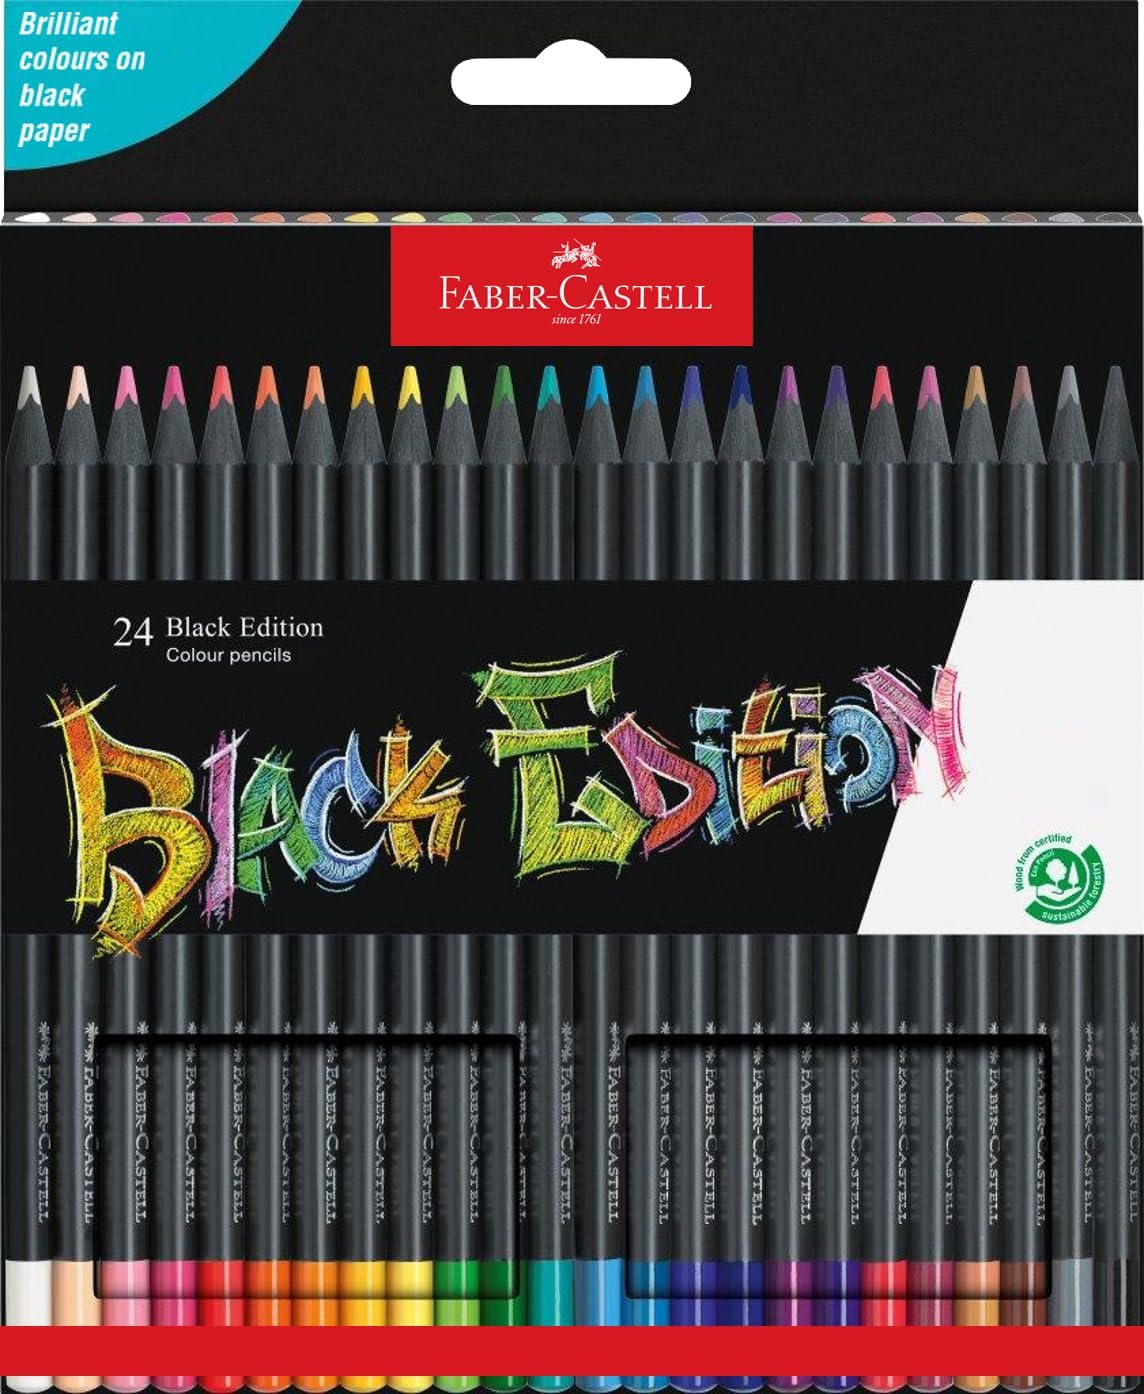 Faber-Castell Black Edition Lot de 36 trousses de couleurs assorties - Mine super douce - Bois noir - Idéal pour dessiner sur papier clair, foncé et coloré - Couleurs assorties